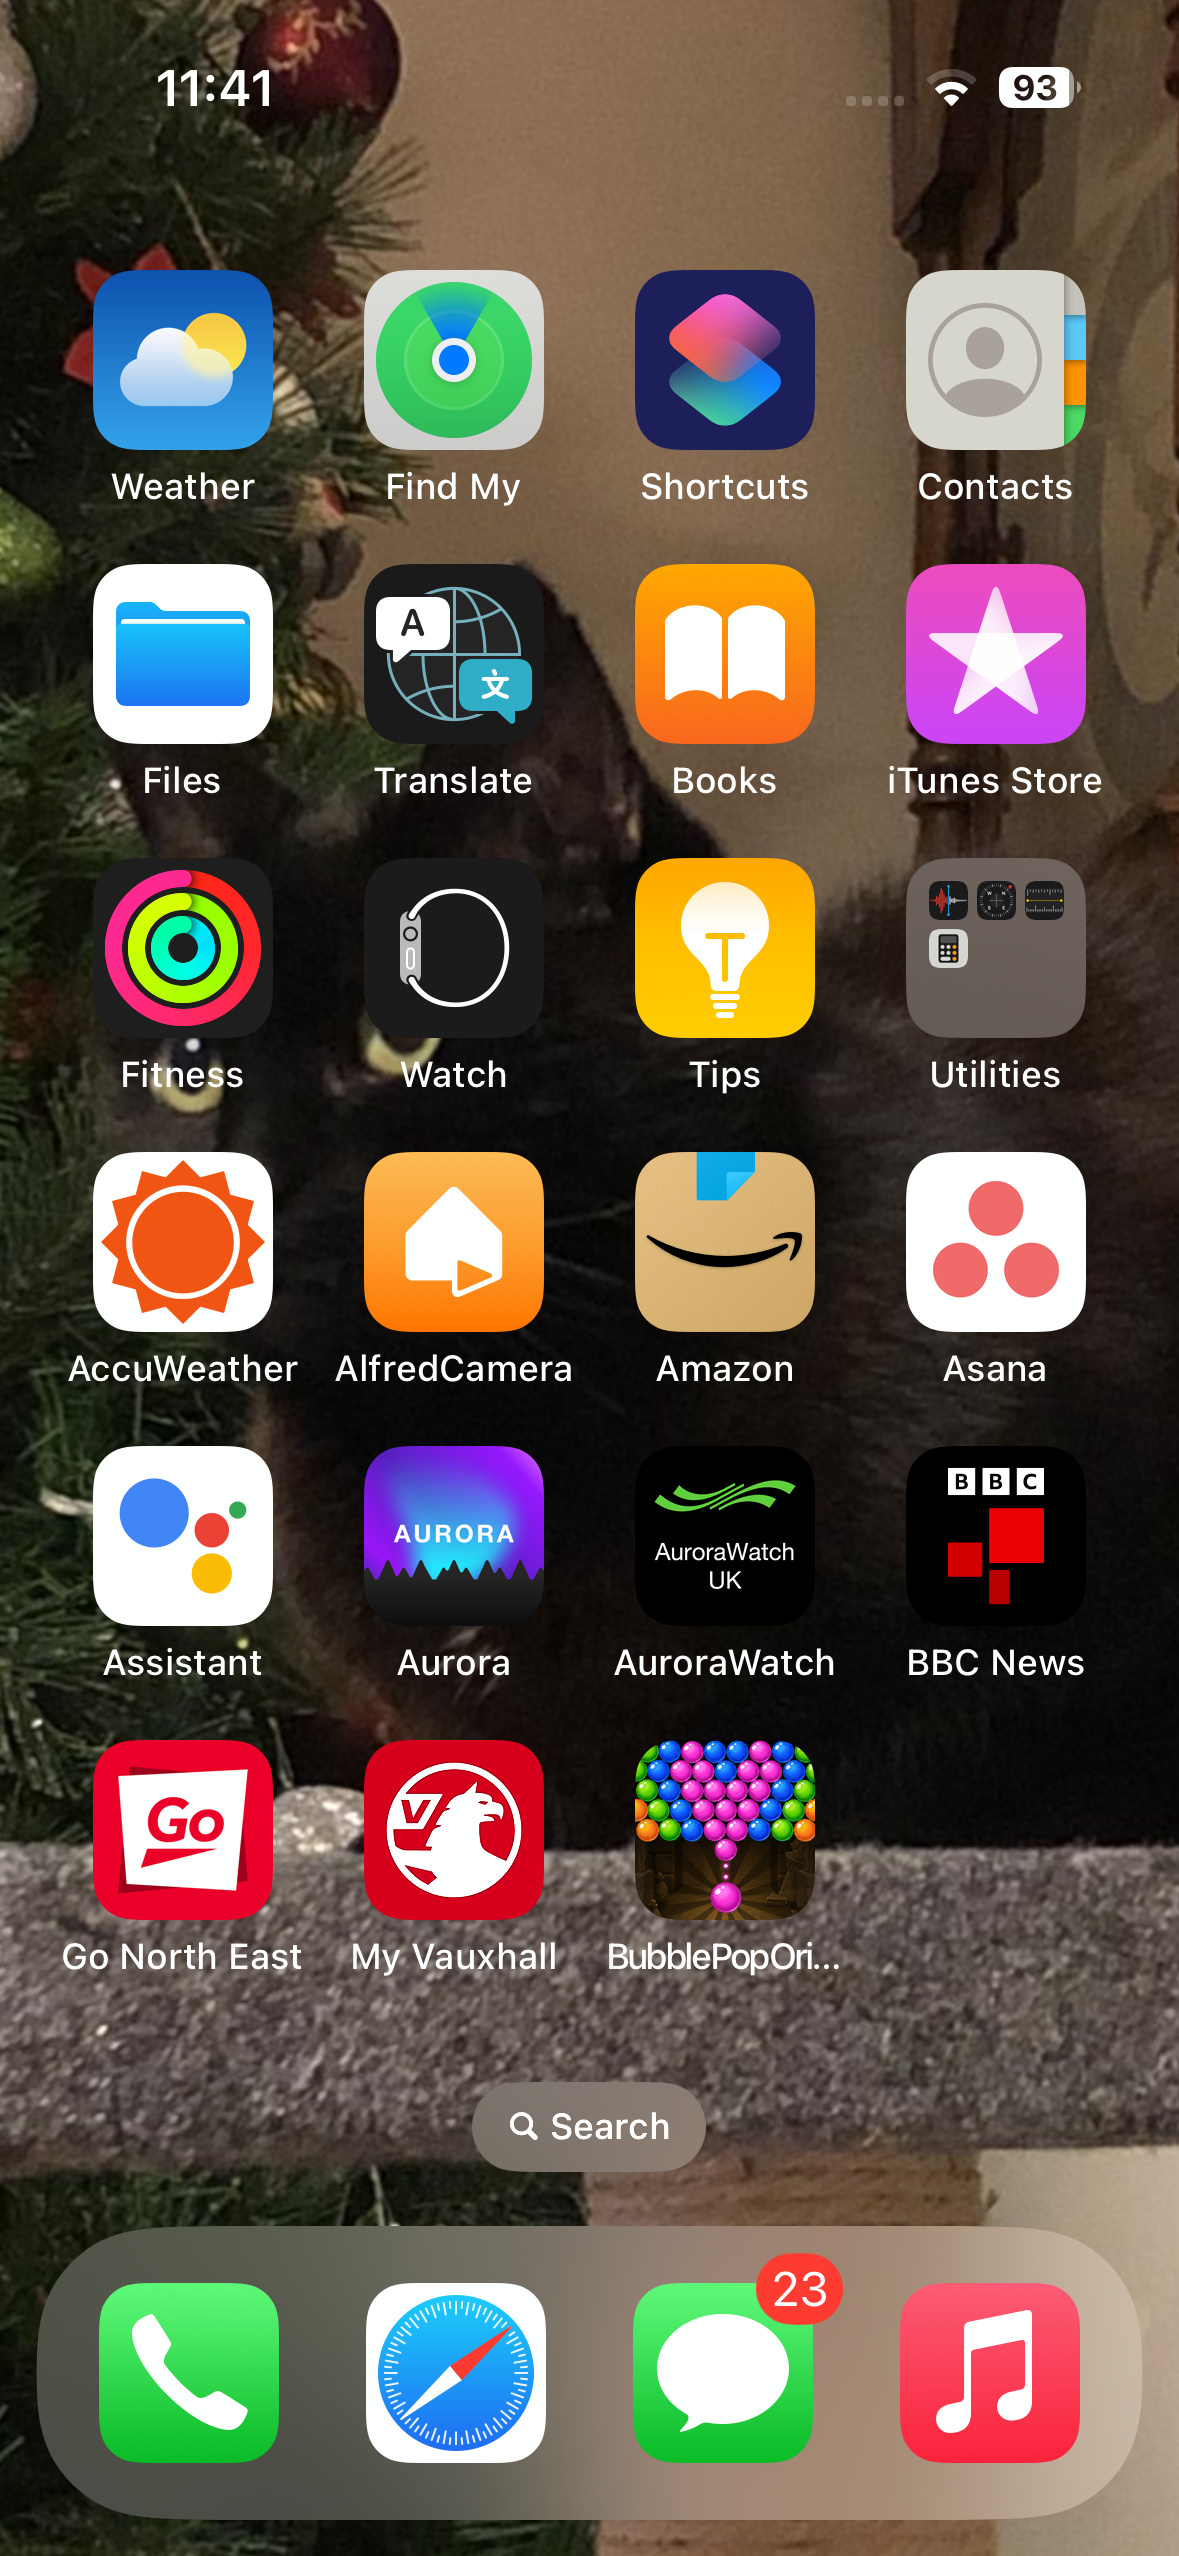 A tela inicial do iPhone com o aplicativo Channel 4 removido.